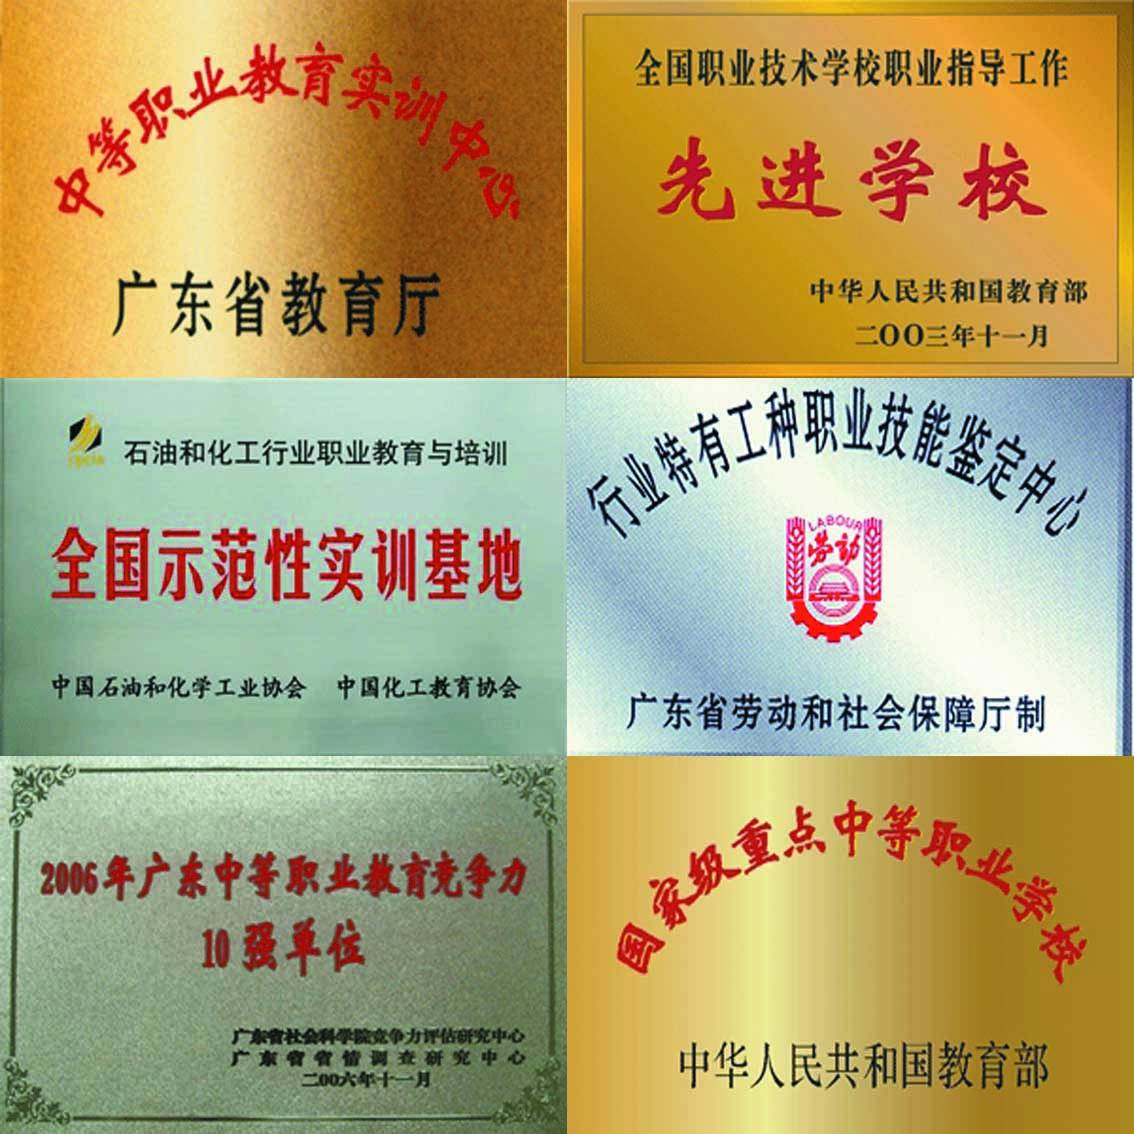 廣東省石油化工職業技術學校